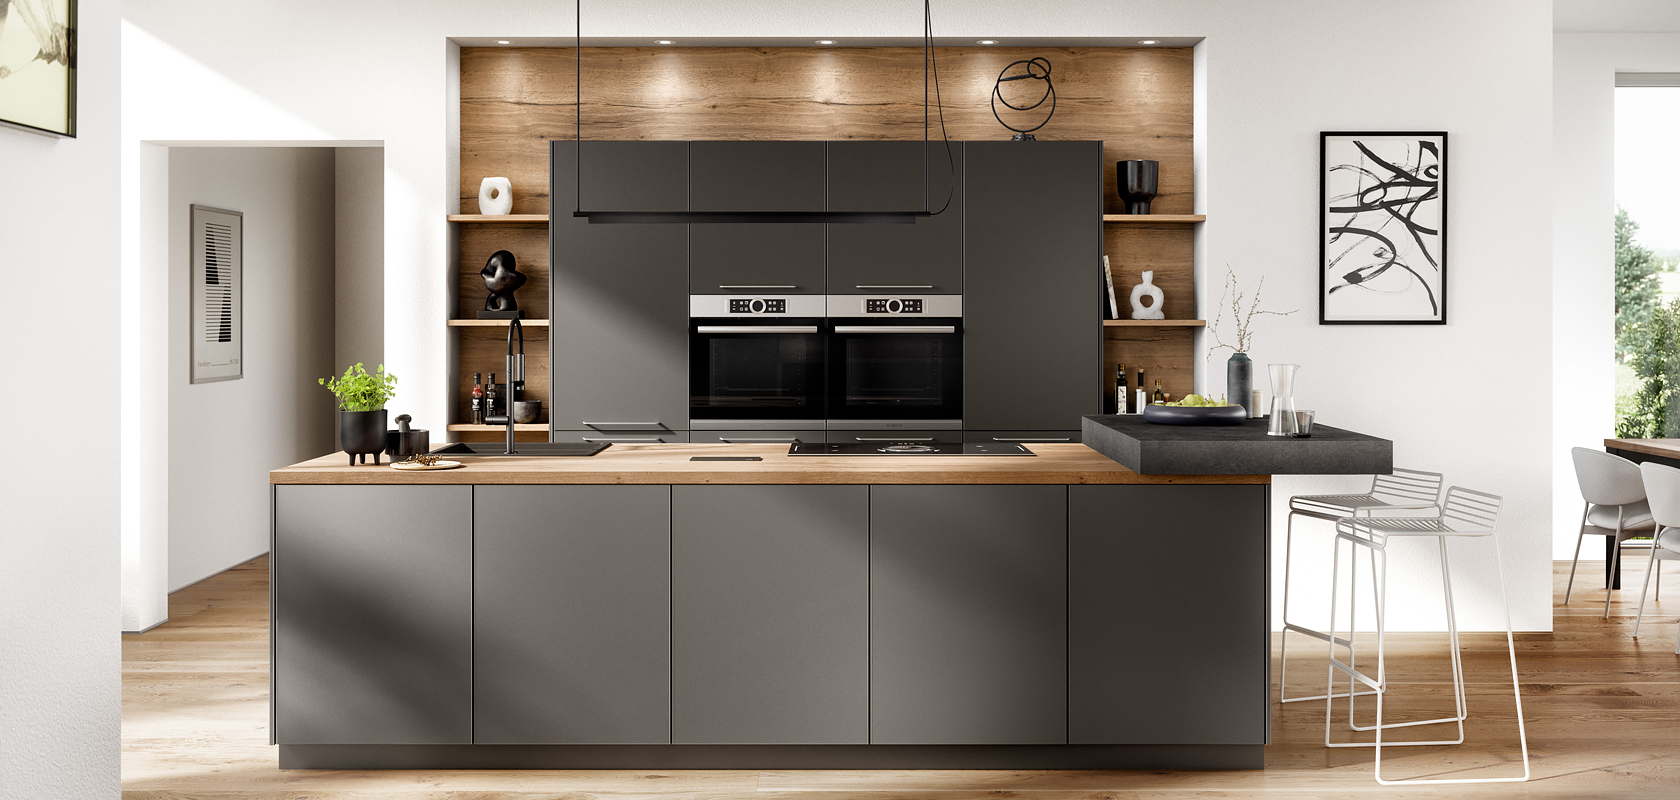 Interior de cocina moderna con elegantes gabinetes oscuros, electrodomésticos integrados y acentos de madera, combinando funcionalidad con estilo en un diseño de hogar luminoso y minimalista.